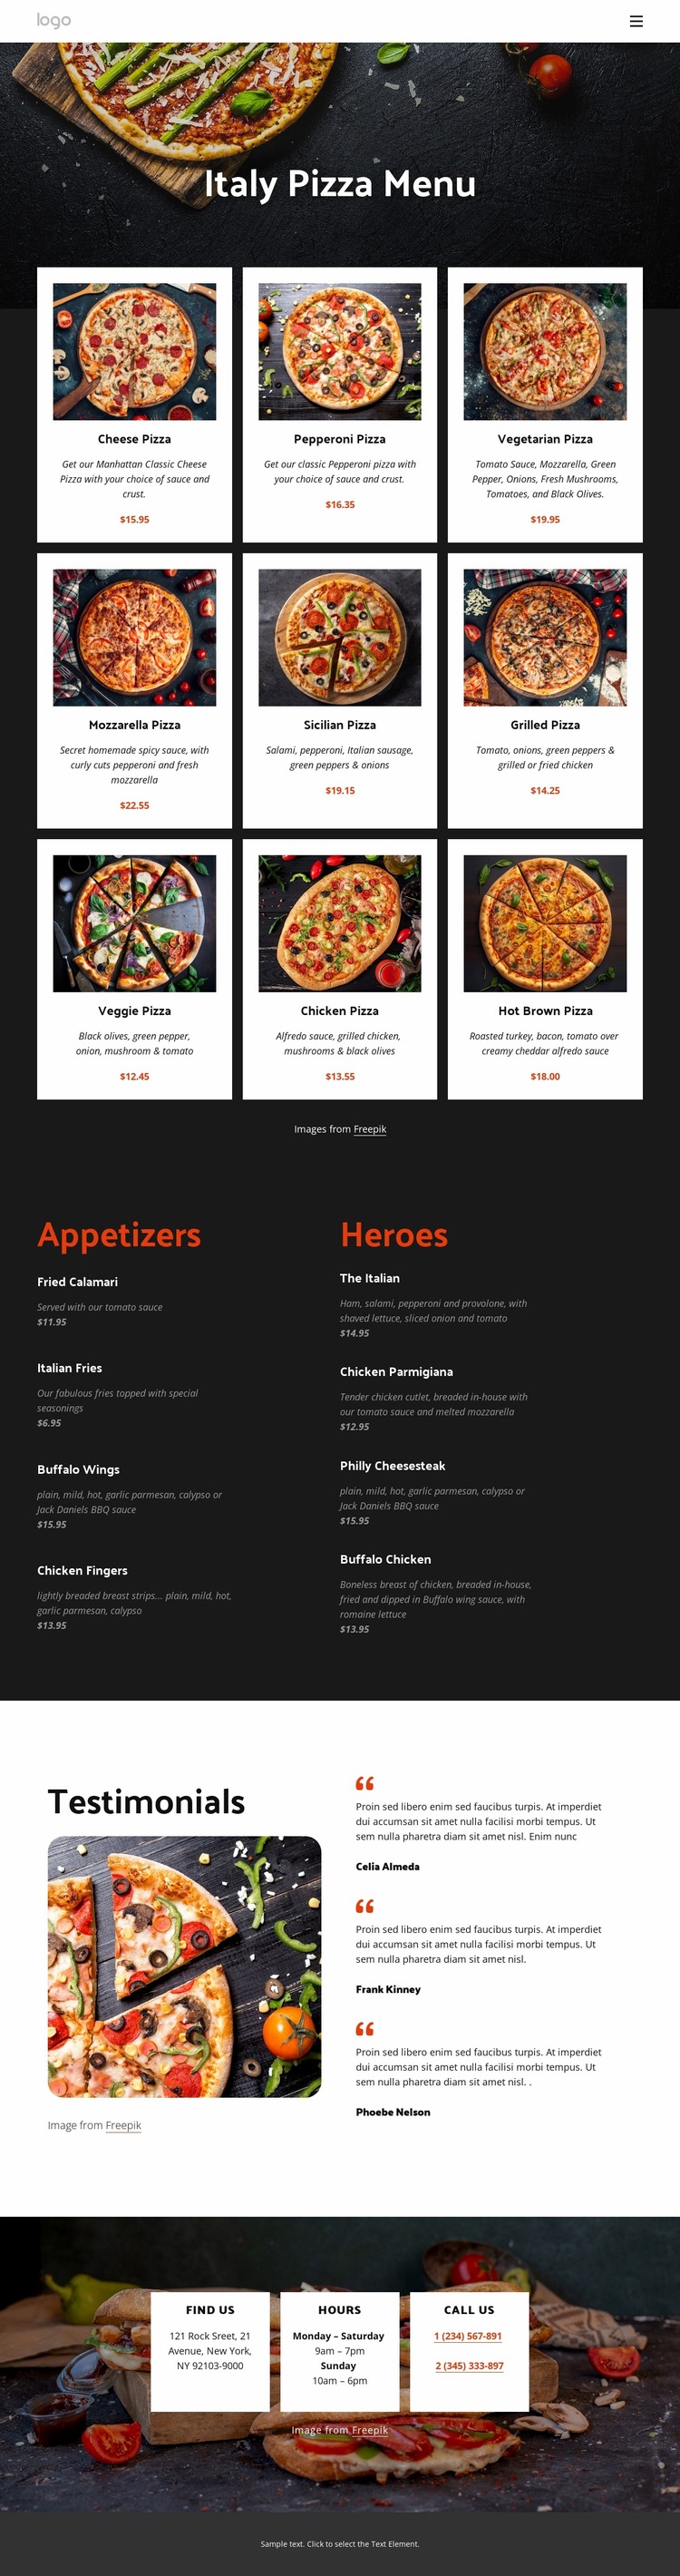 Our pizza menu Website Builder Templates